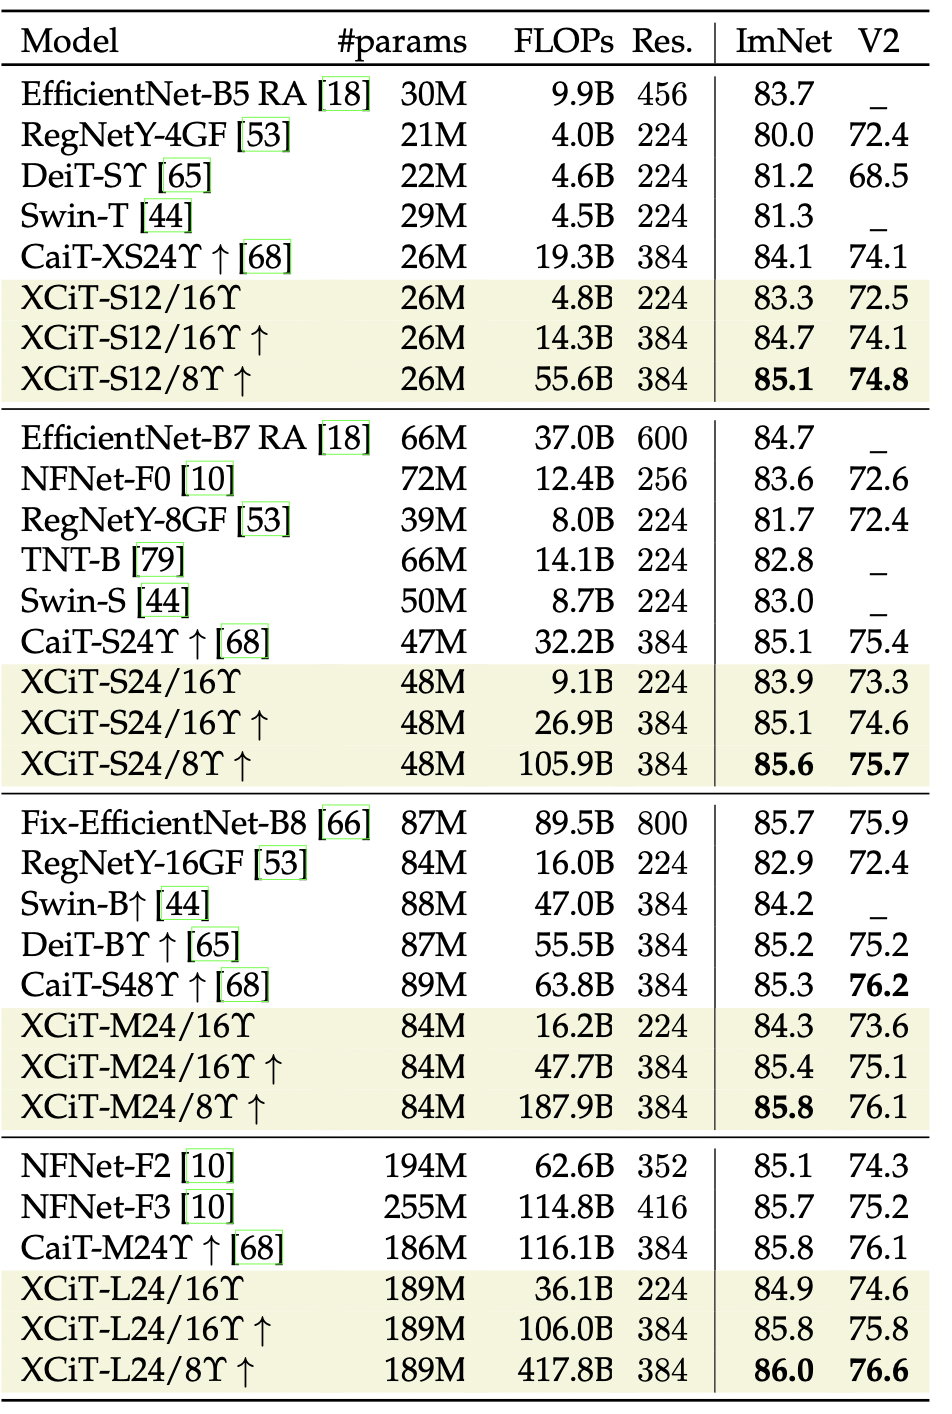 Сравнение различных моделей классификации на ImageNet cо сравнивыми характеристиками.